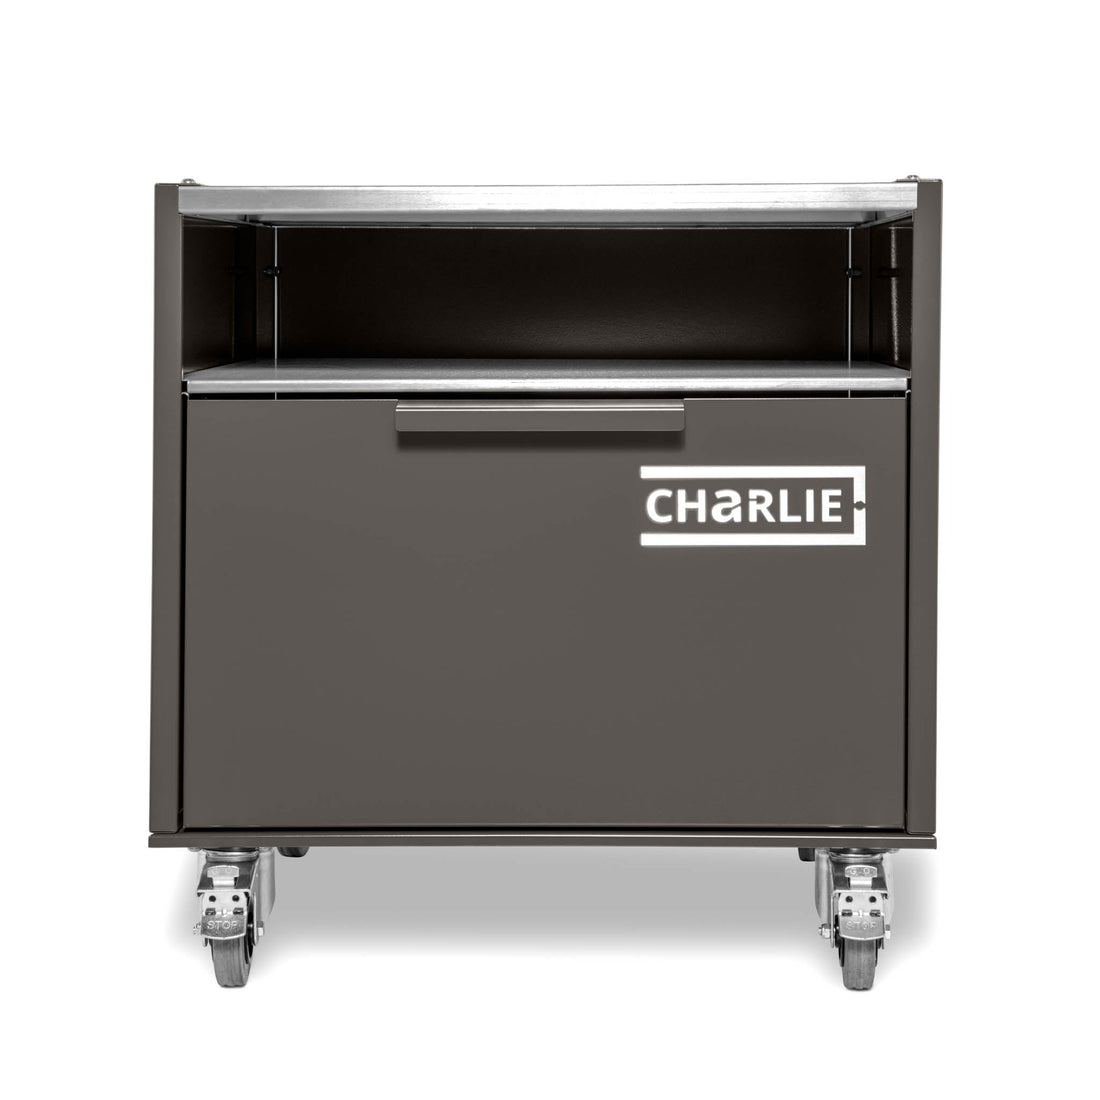 Charlie Base Cabinet - Porcini - Charlie Oven